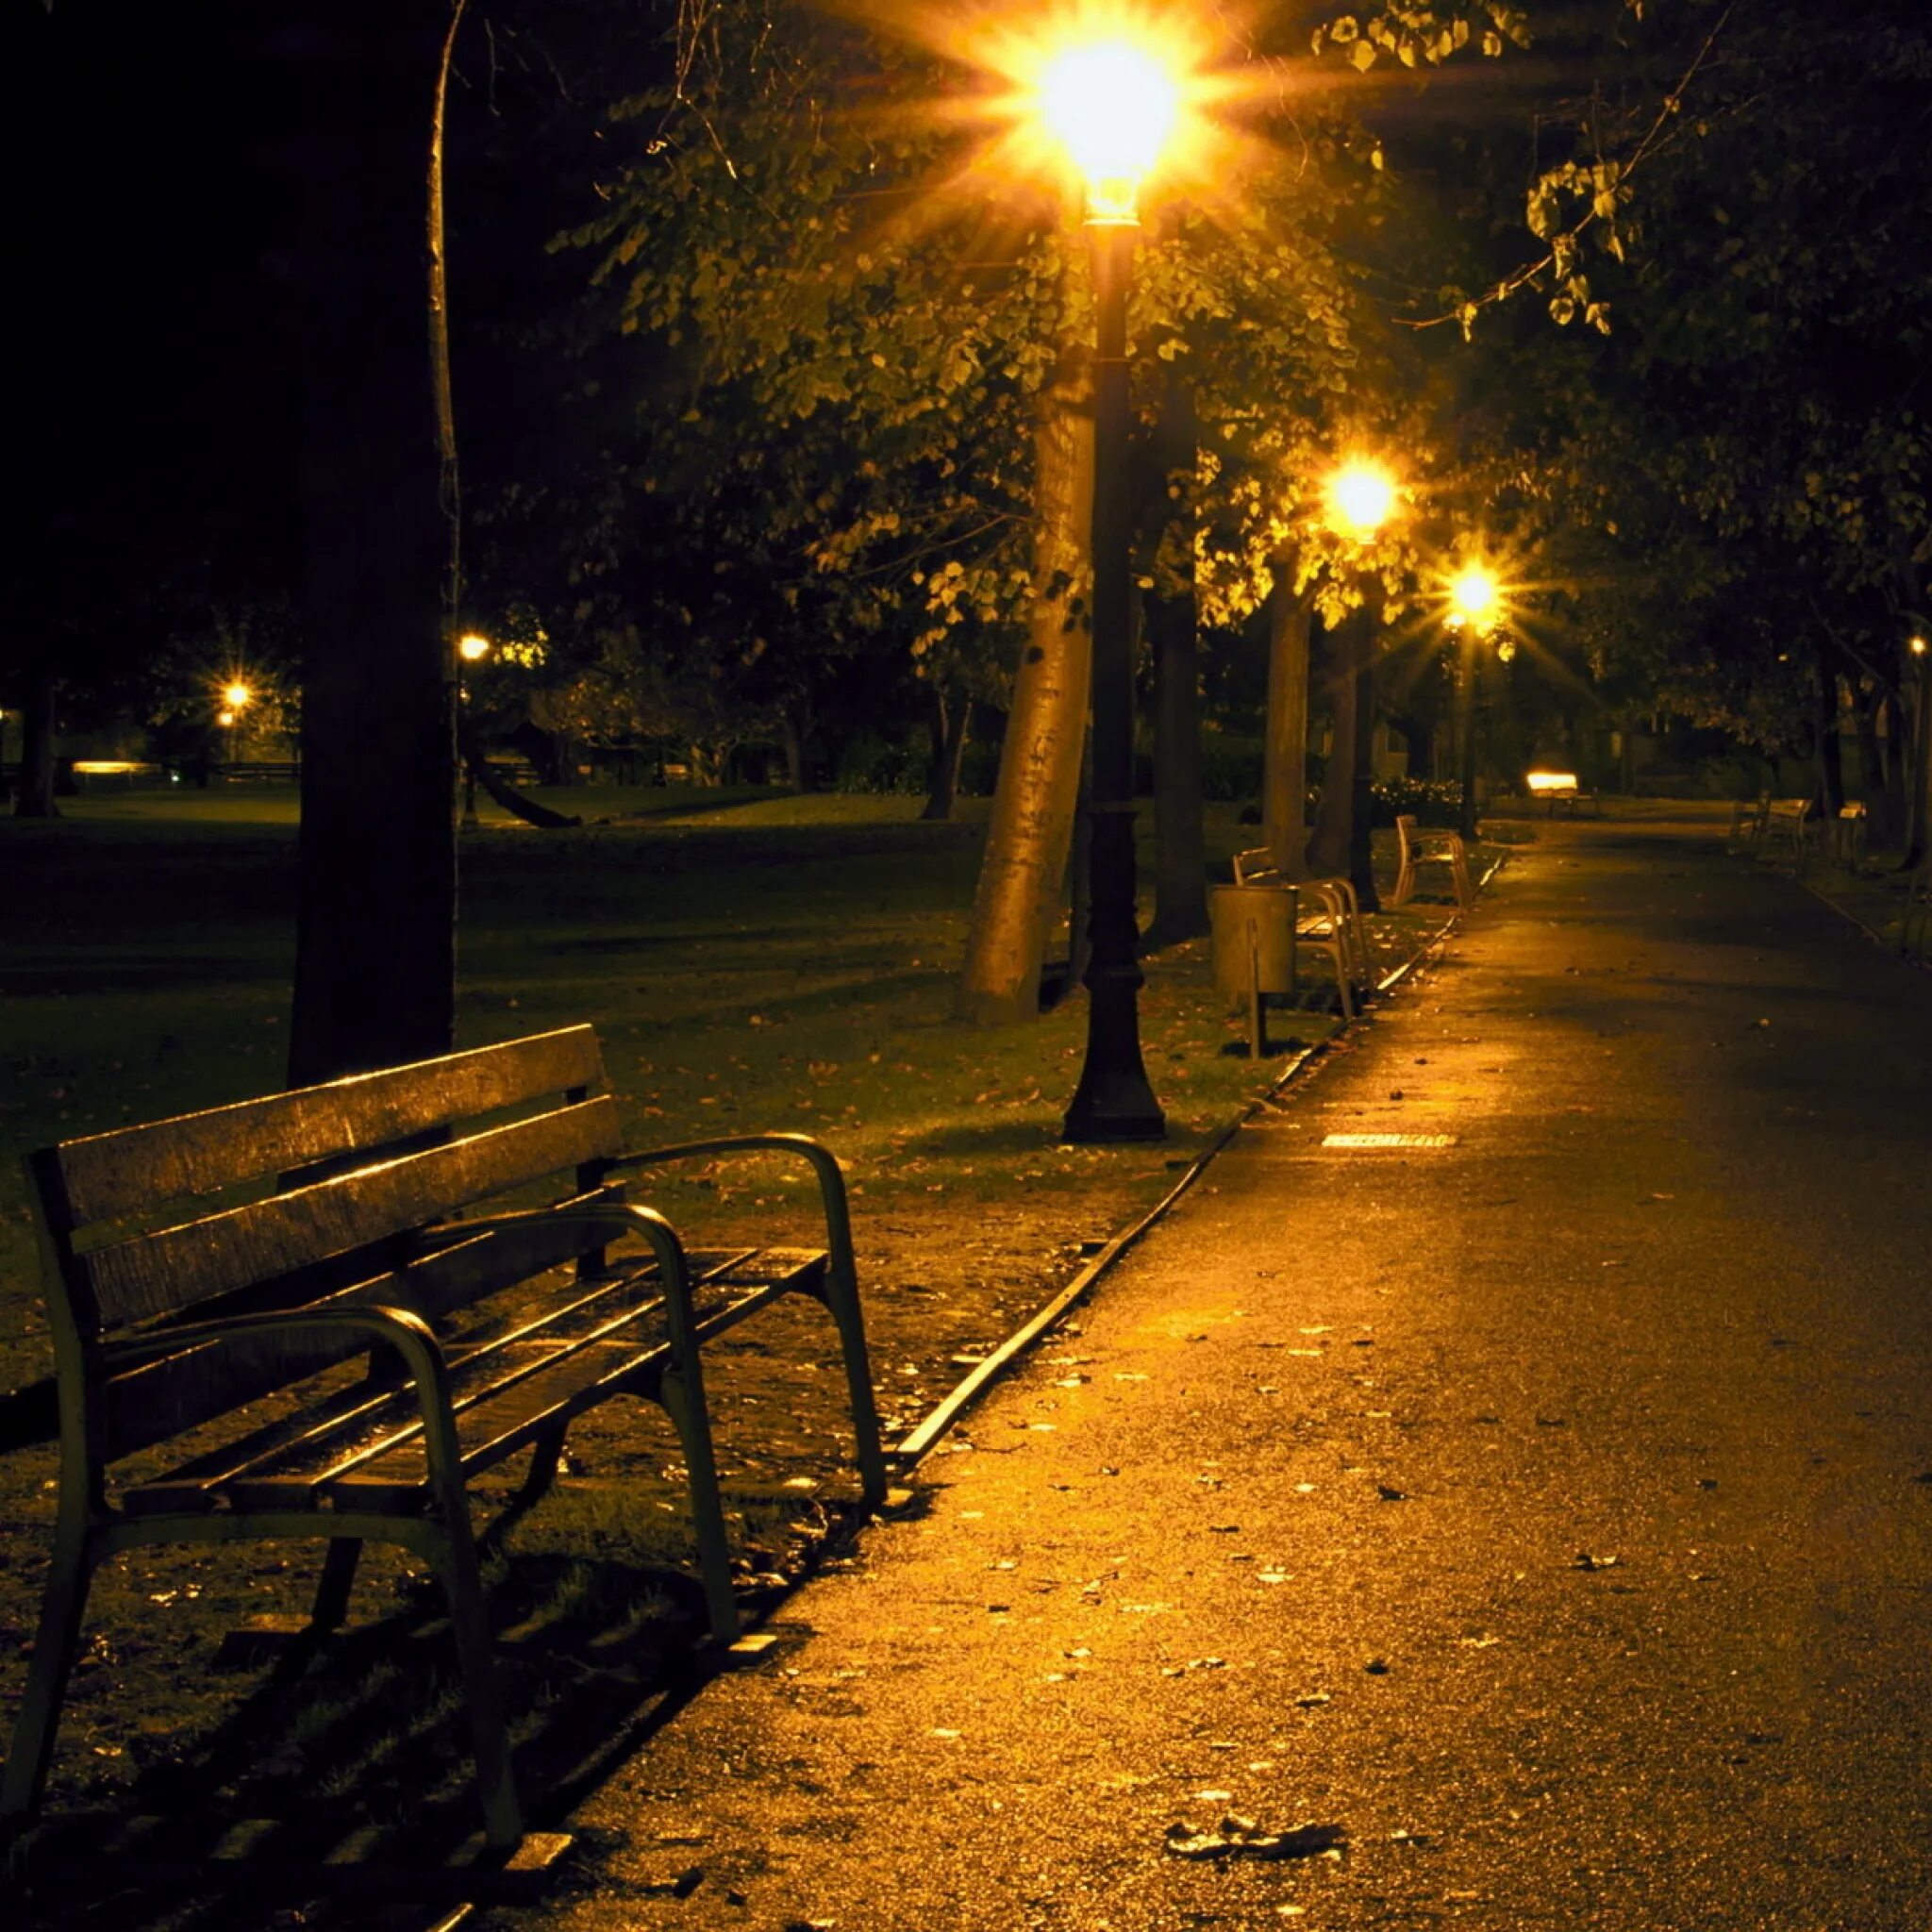 Аллея ночью. Улица вечером. Ночная улица в парке. Парк вечером. Погода вечером на улице